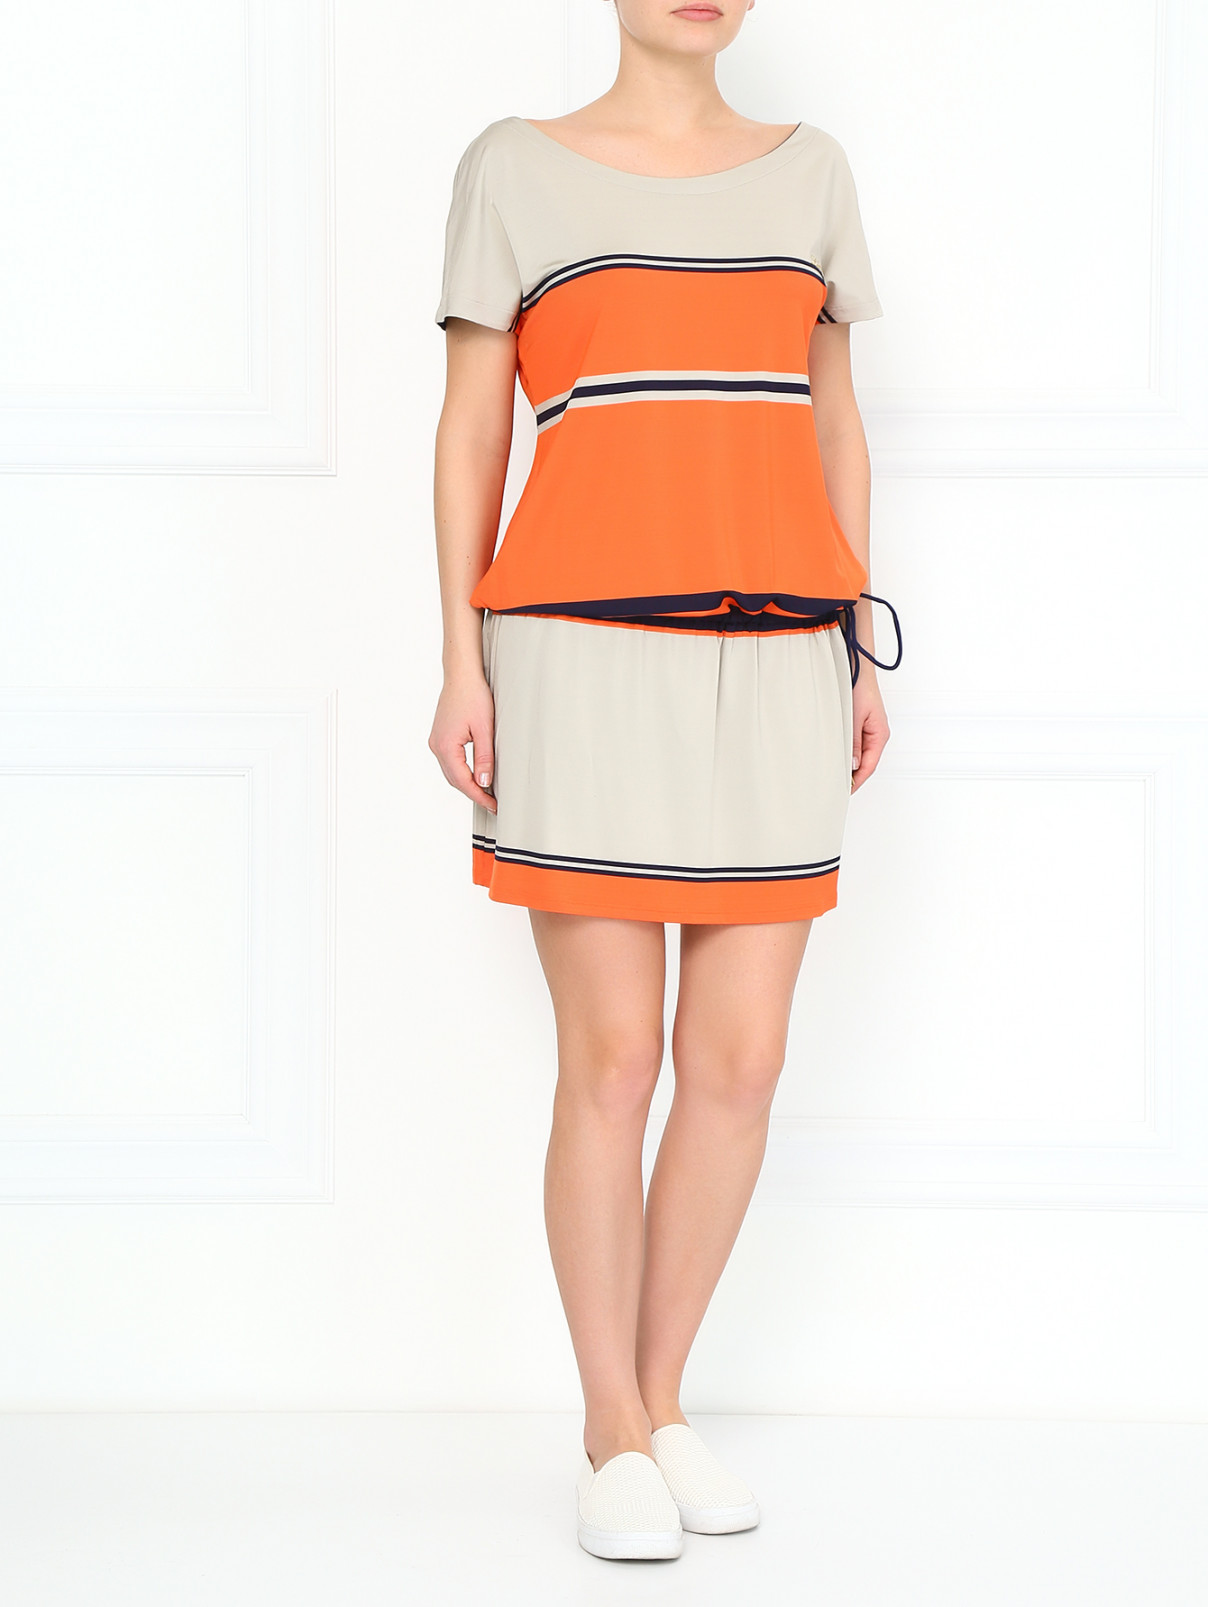 Платье с принтом "Полоска" Les Copains  –  Модель Общий вид  – Цвет:  Оранжевый